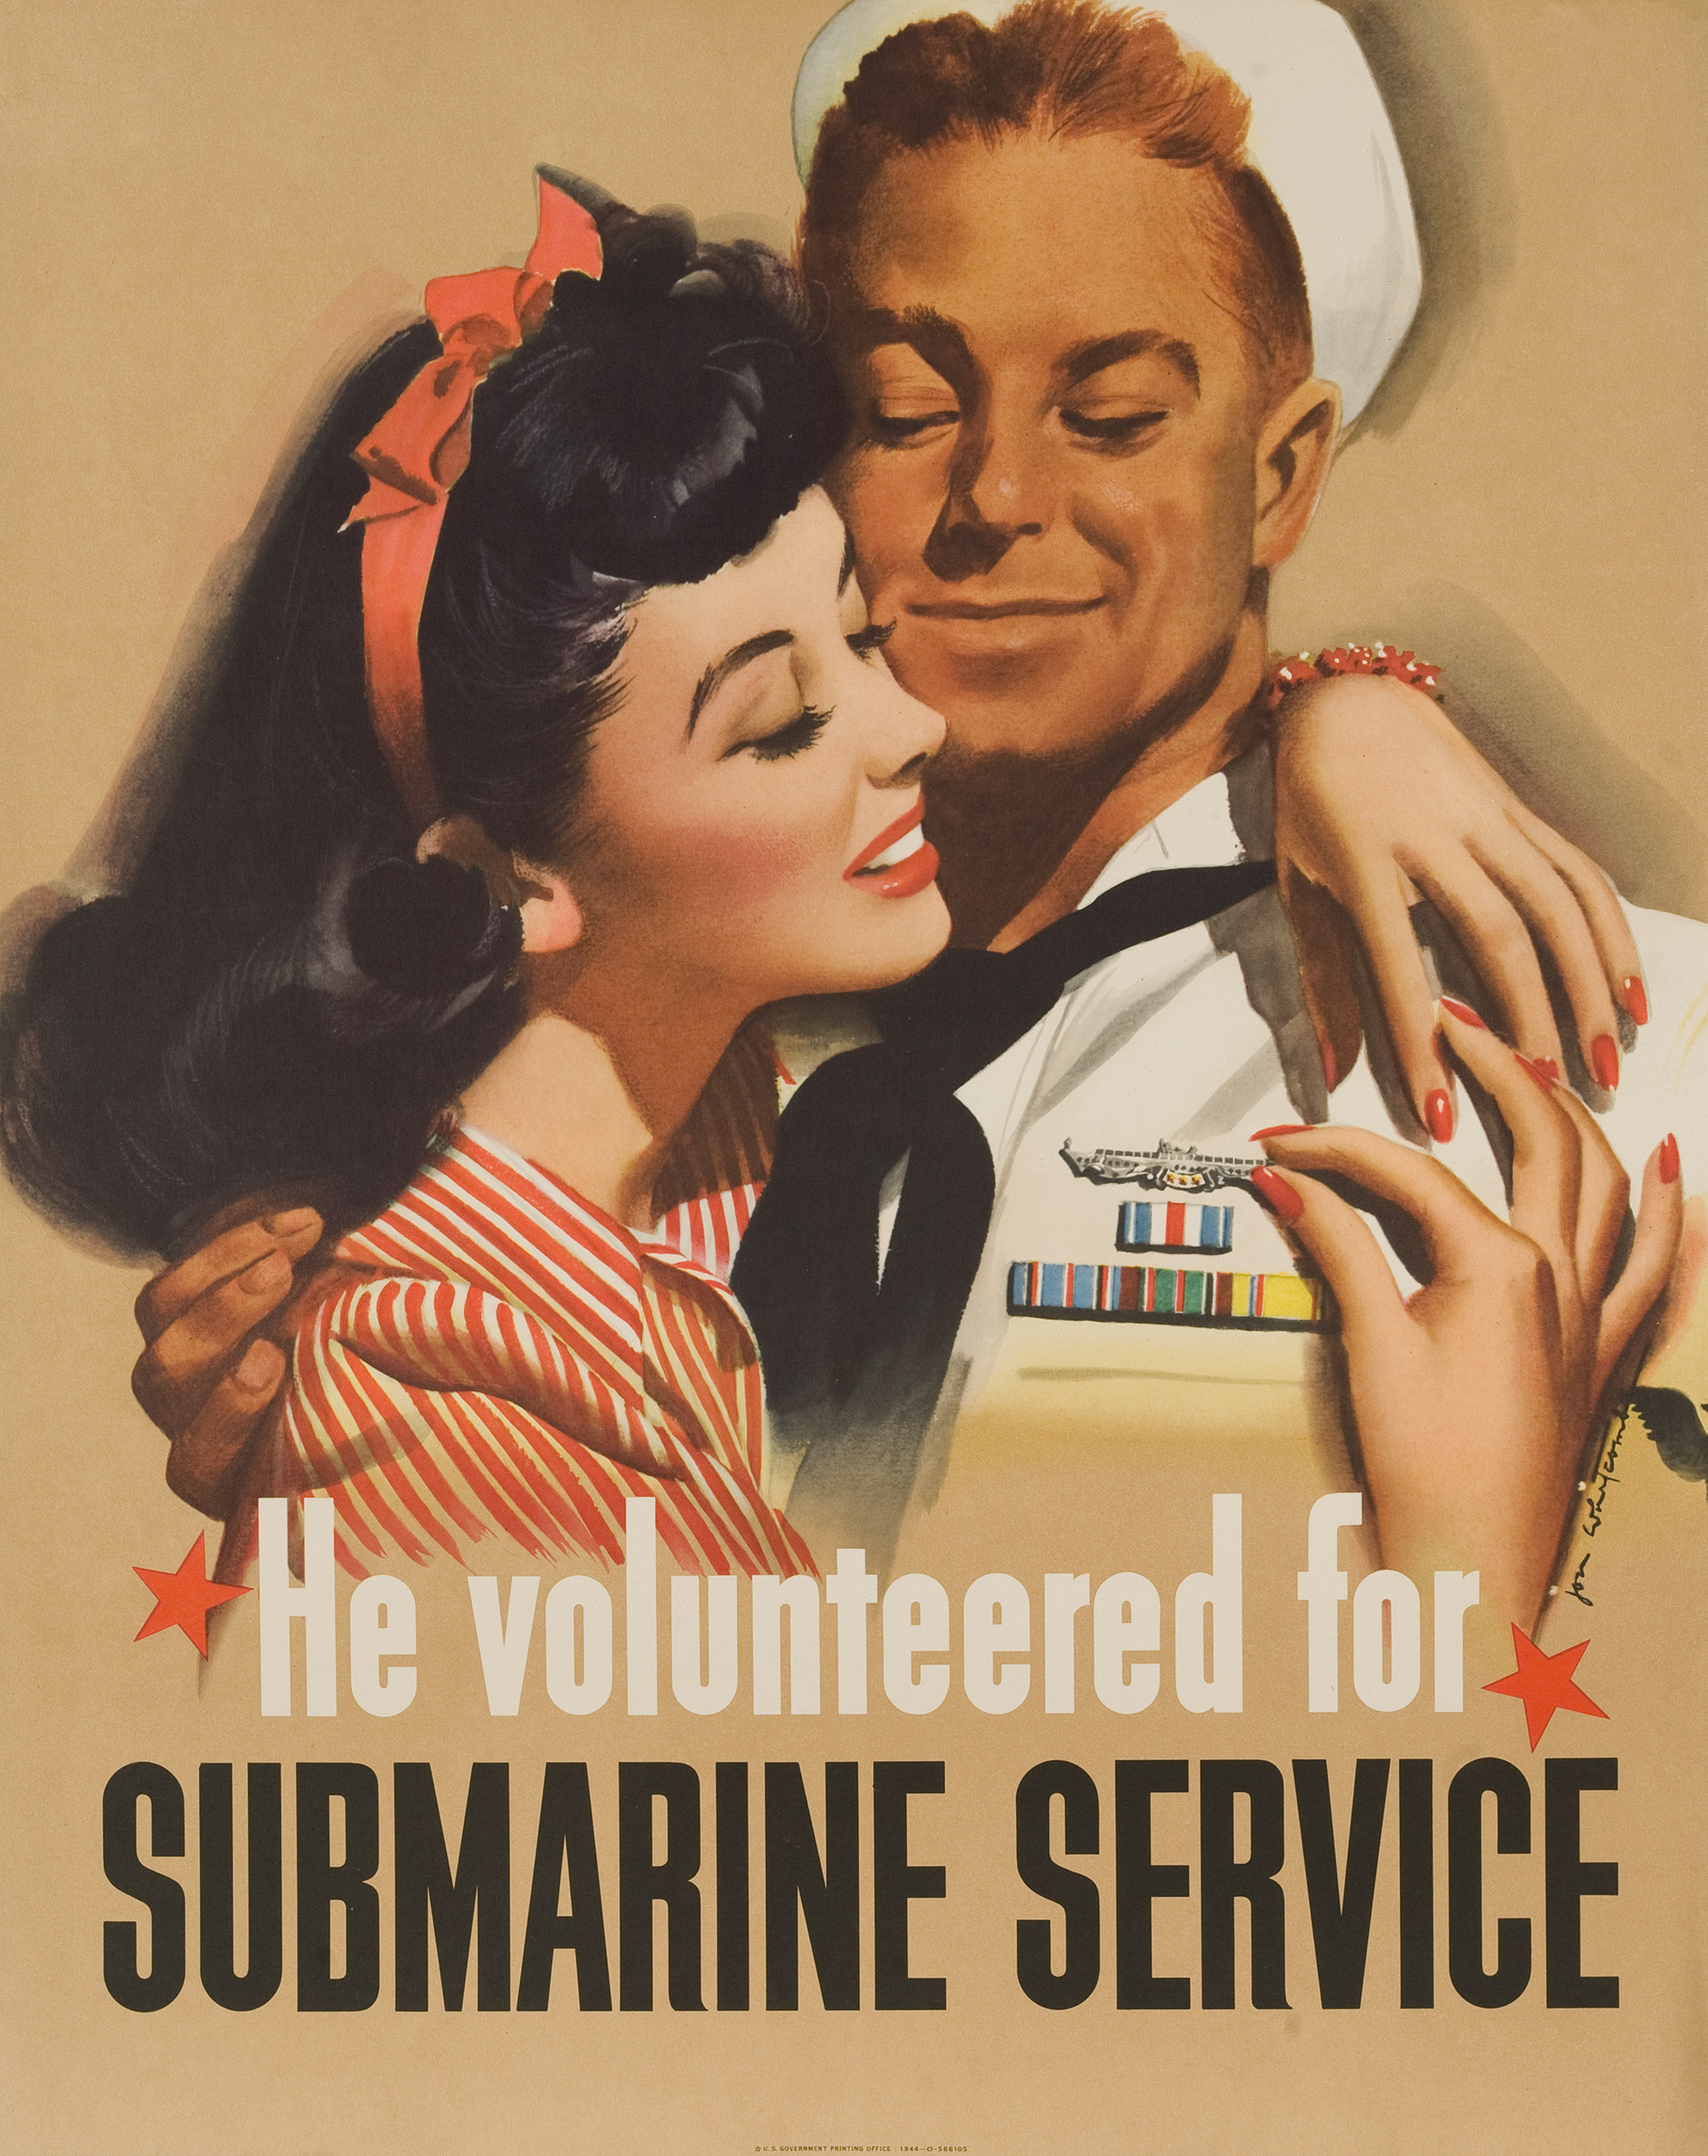 1944 US World War II Poster